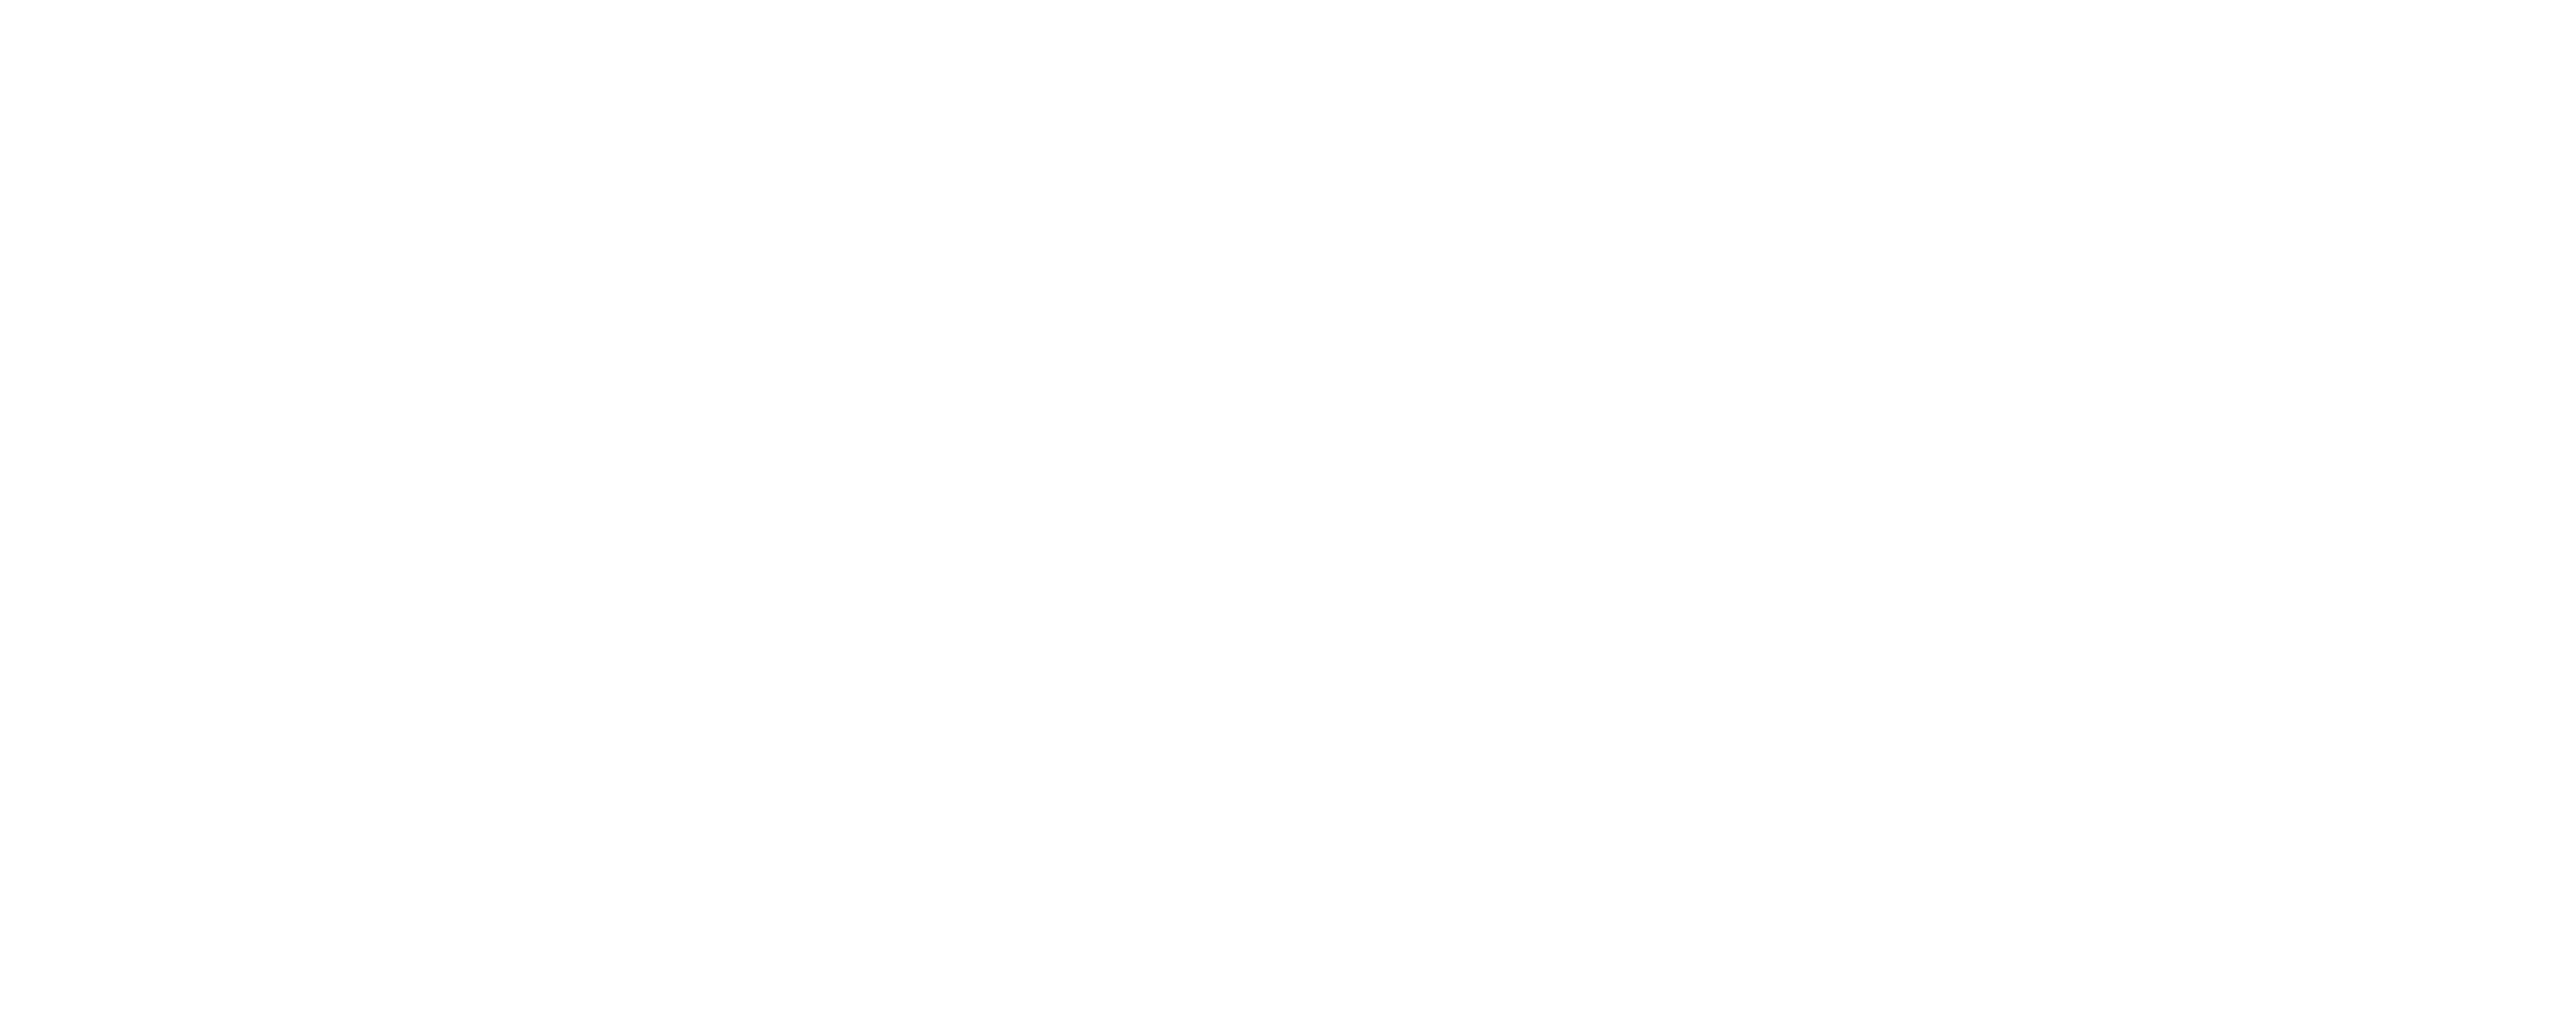 Sidekick Havanese